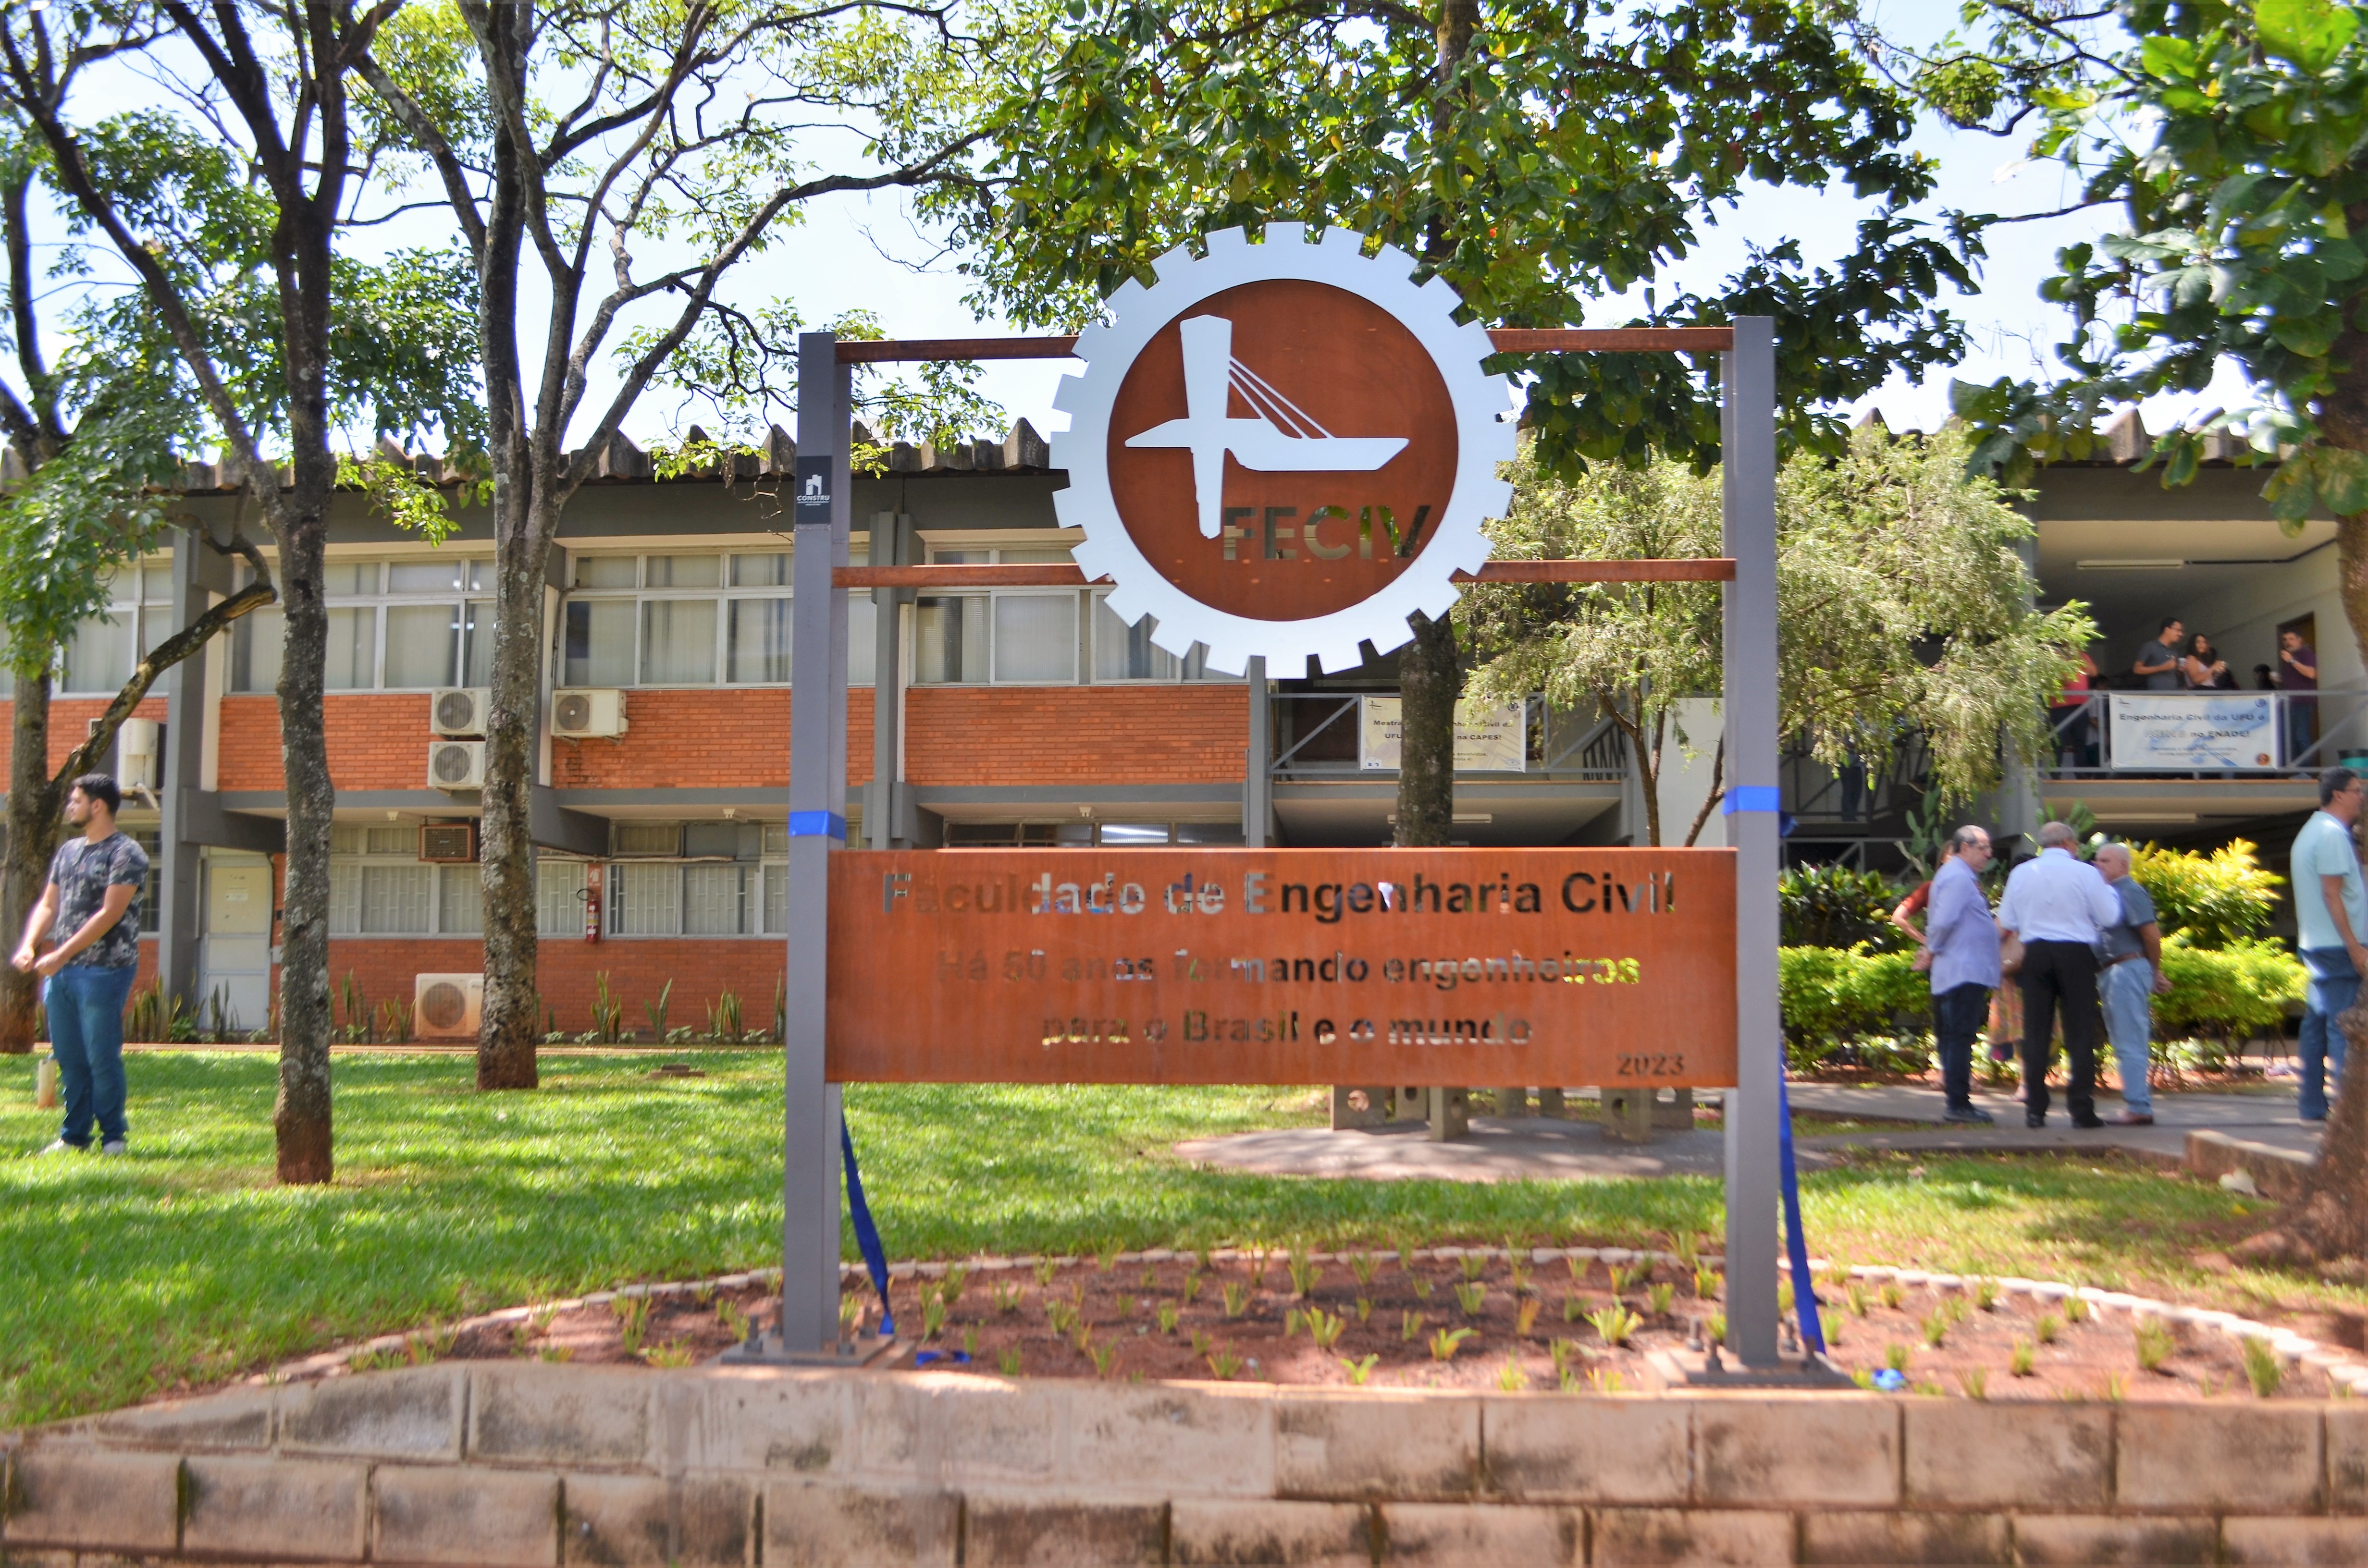 Descerramento da placa comemorativa de 50 anos da Faculdade de Engenharia Civil  (Milton Santos)